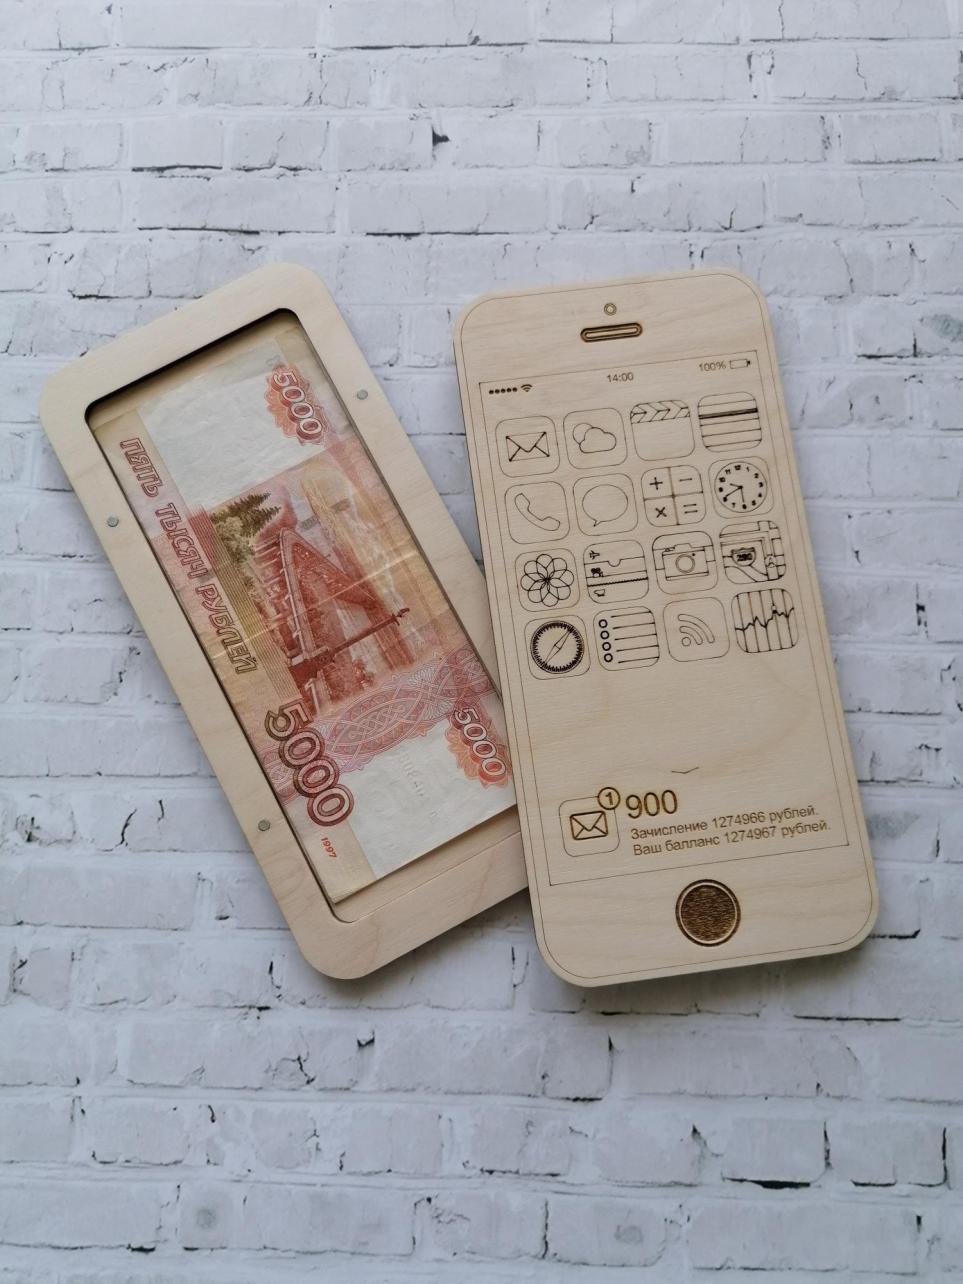 Carteira de madeira cortada a laser caixa de notas em formato de iPhone